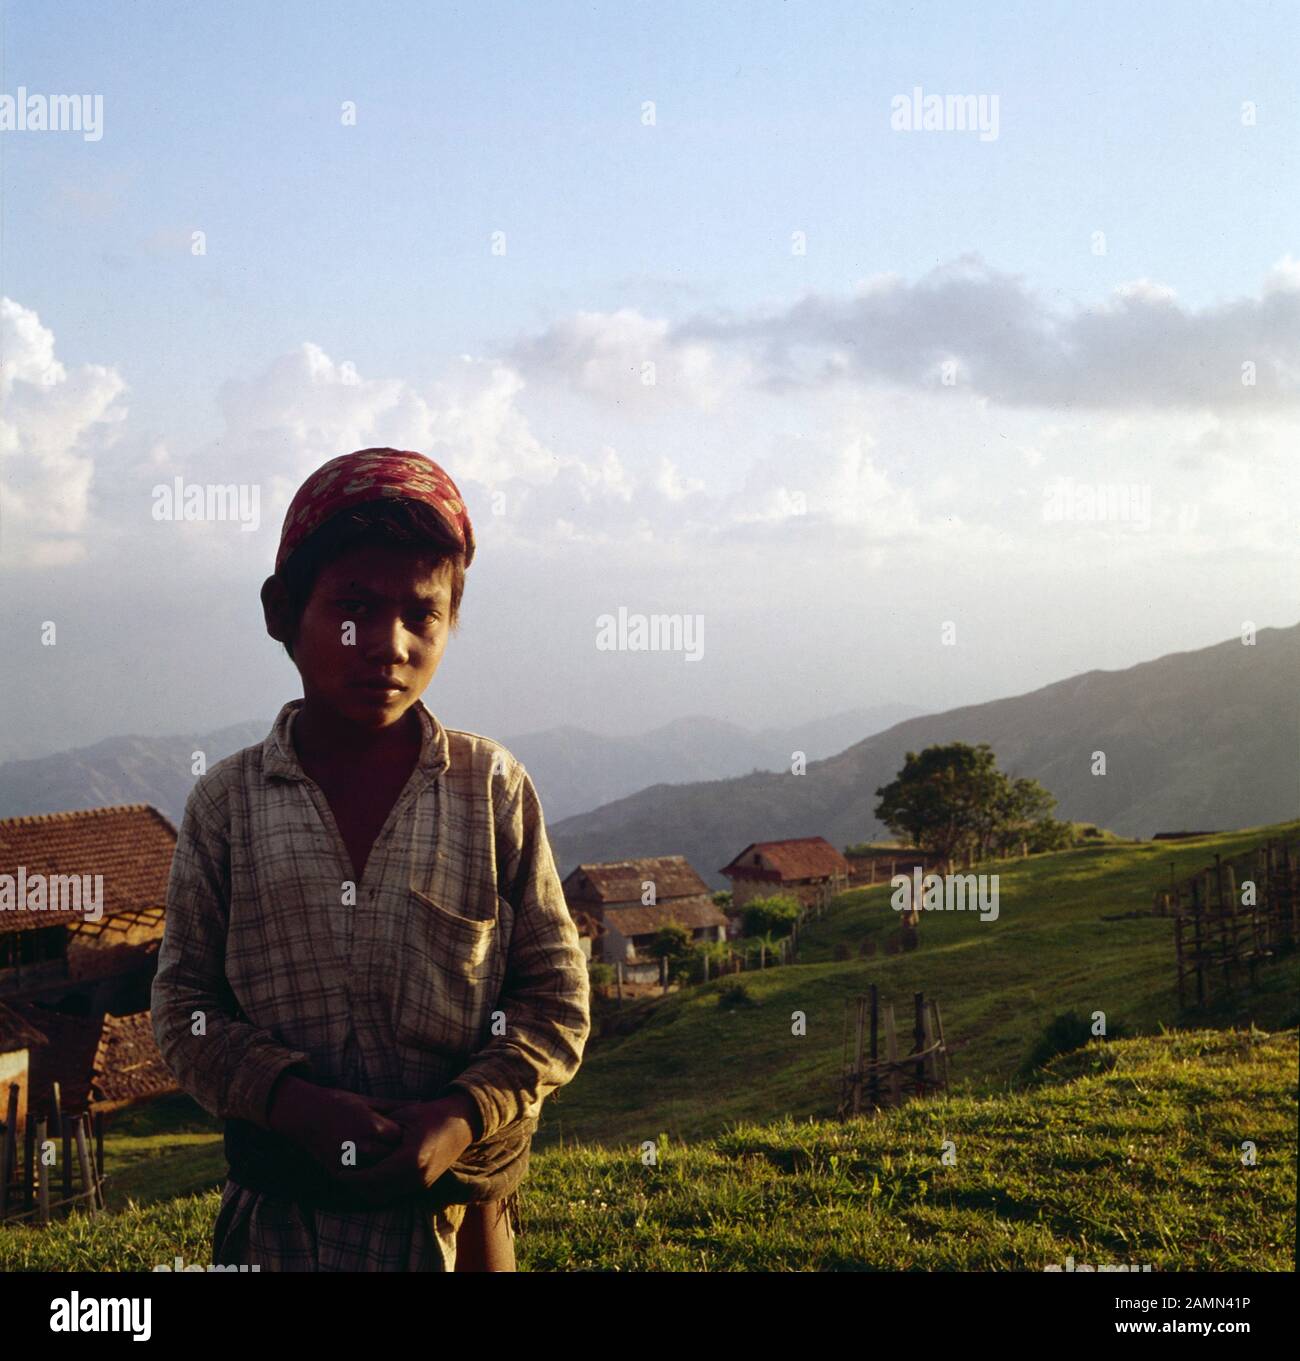 Junge im Hochland von Nepal, 1980er Jahre. Junge im nepalesischen Hochland, 1980er Jahre. Stockfoto